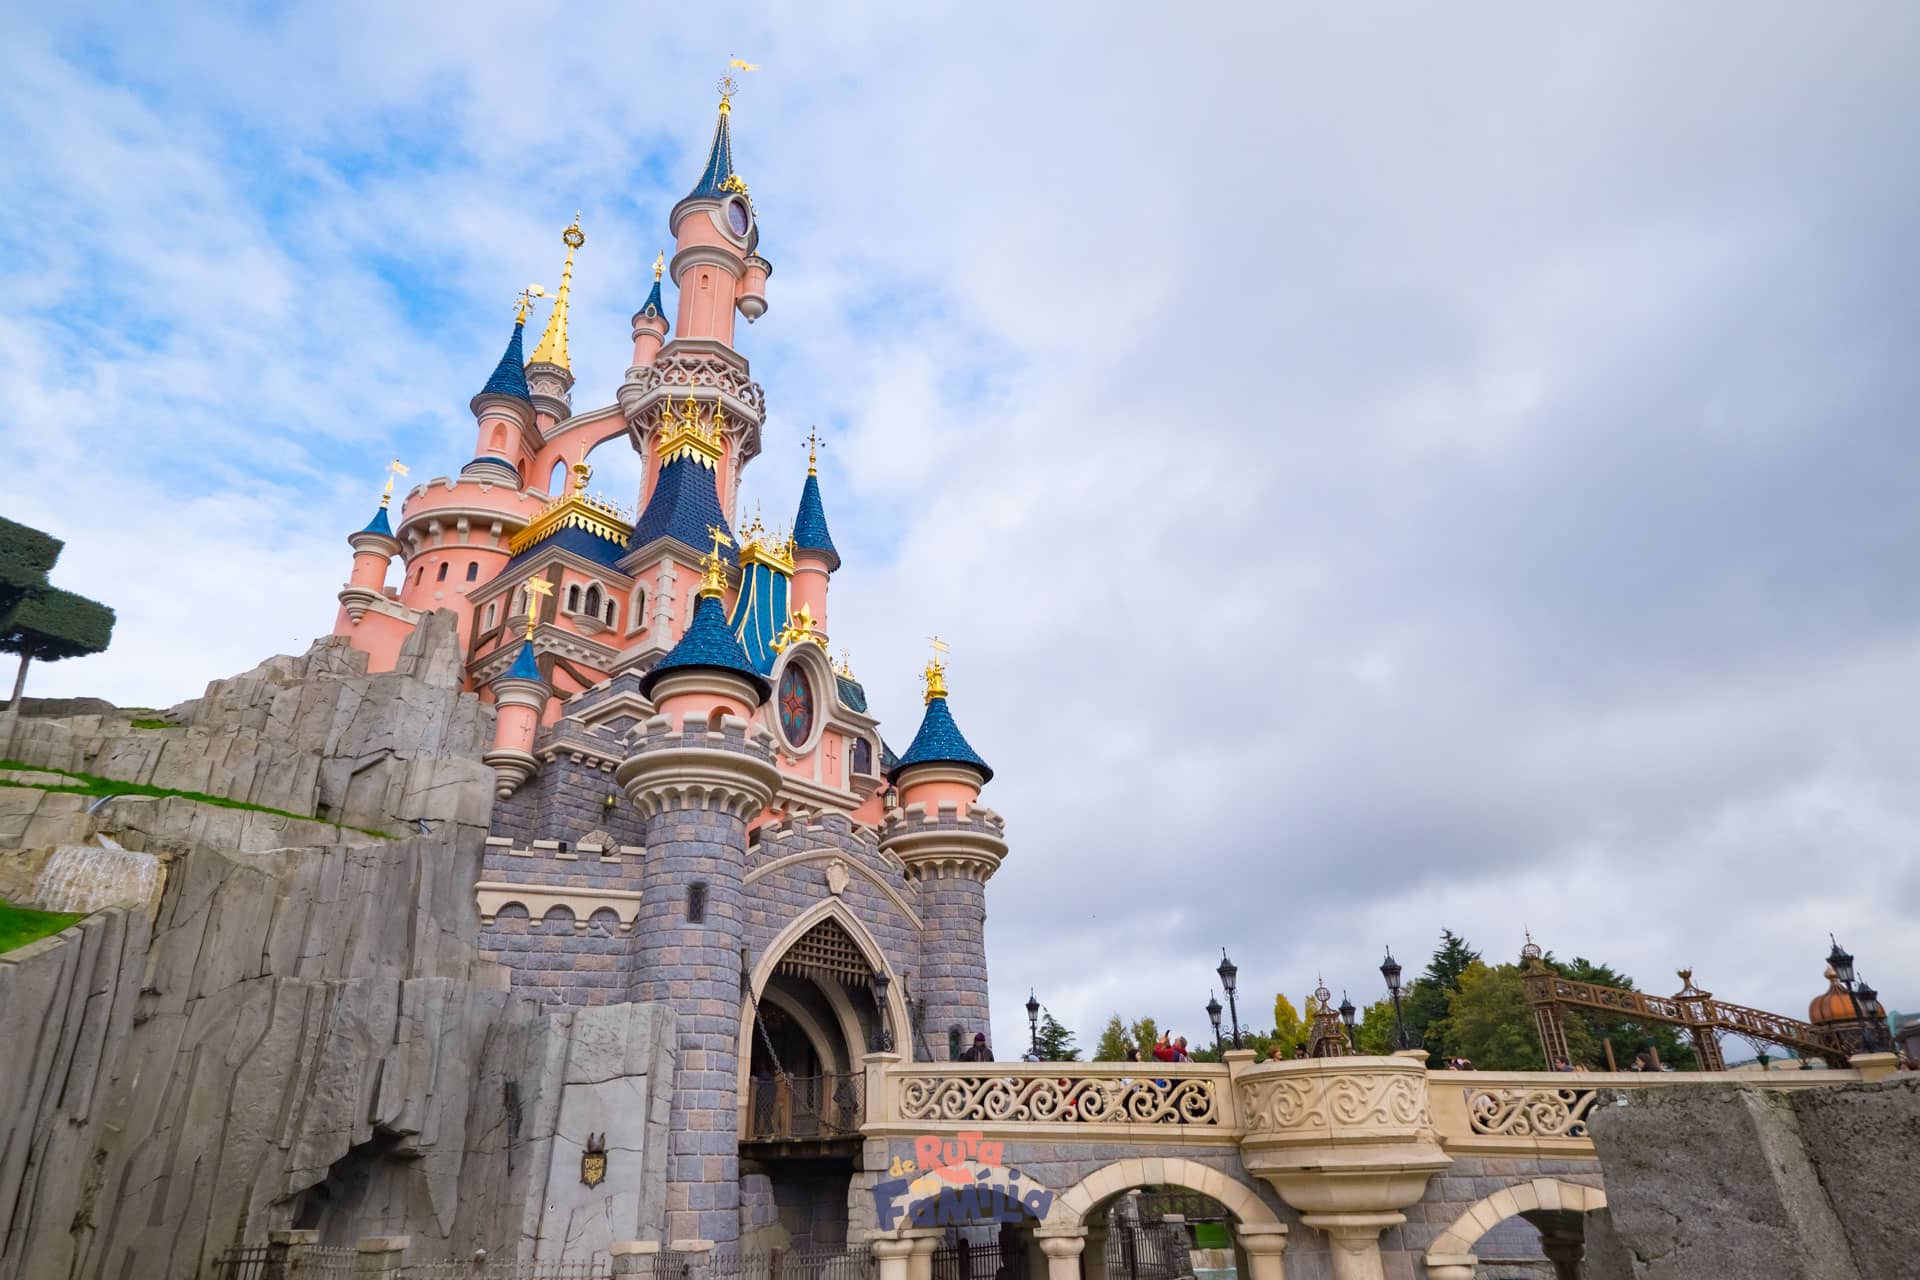 El castillo de Disneyland París